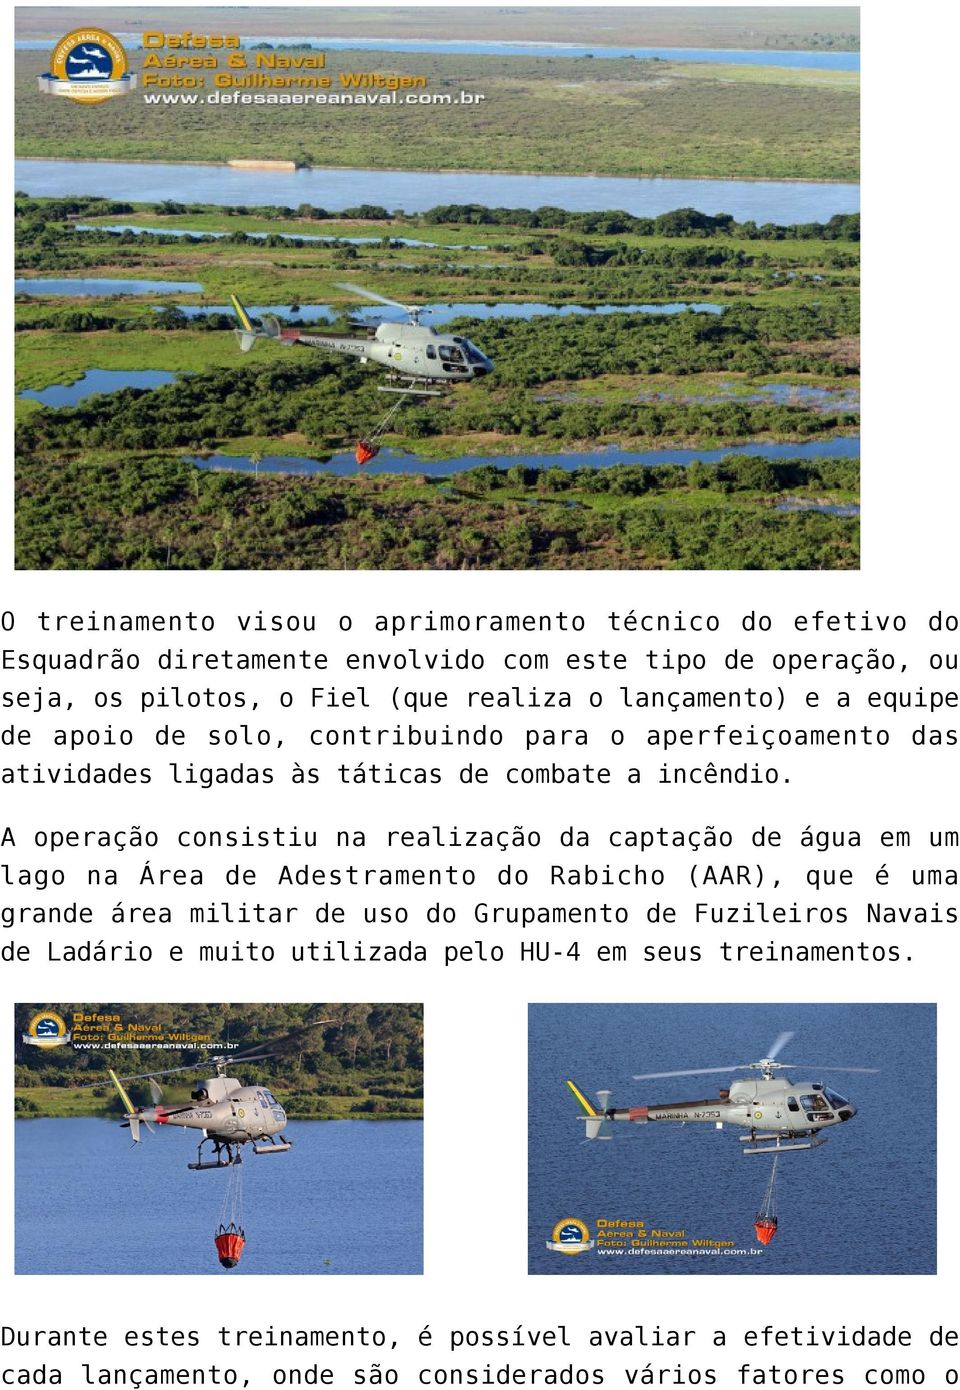 A operação consistiu na realização da captação de água em um lago na Área de Adestramento do Rabicho (AAR), que é uma grande área militar de uso do Grupamento de